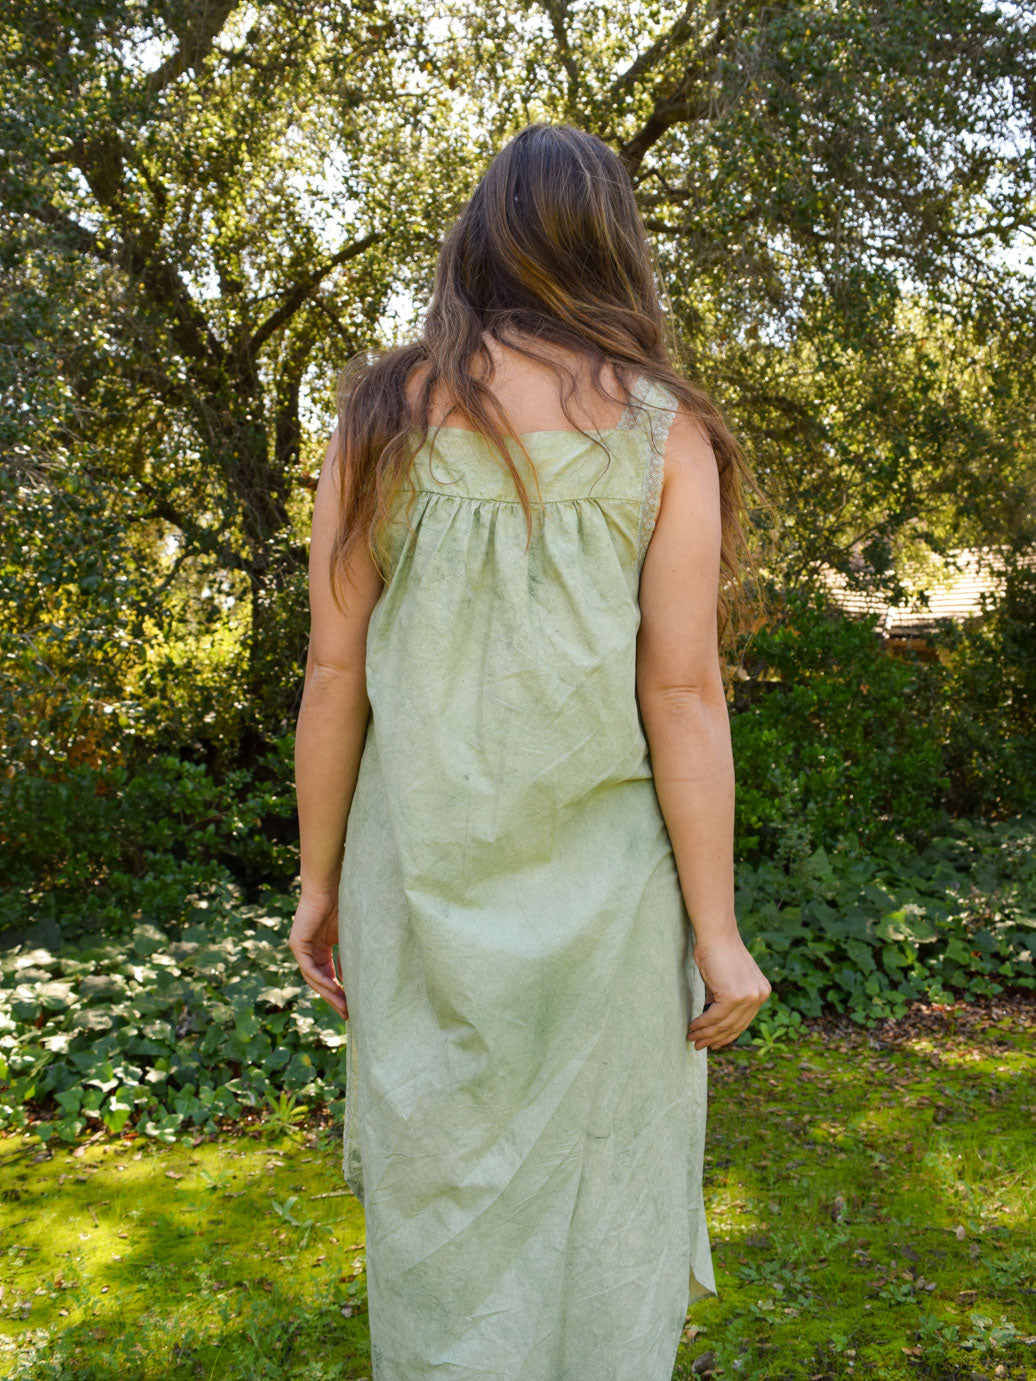 Chlorophyllin Side Tie Lace Dress